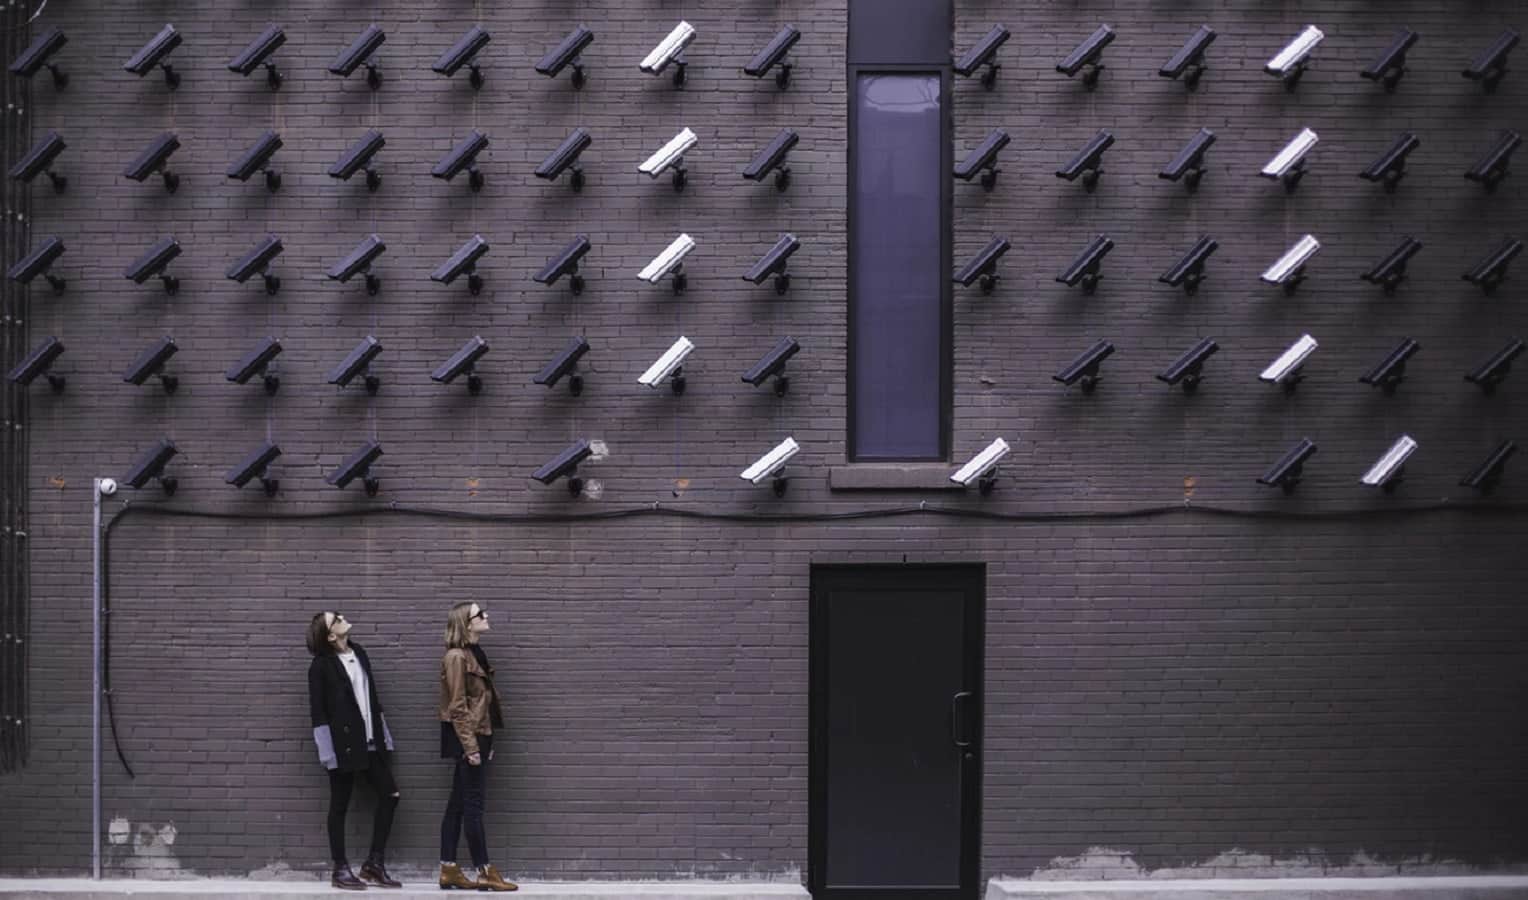 камеры распознавания лиц, контролирующие наблюдение